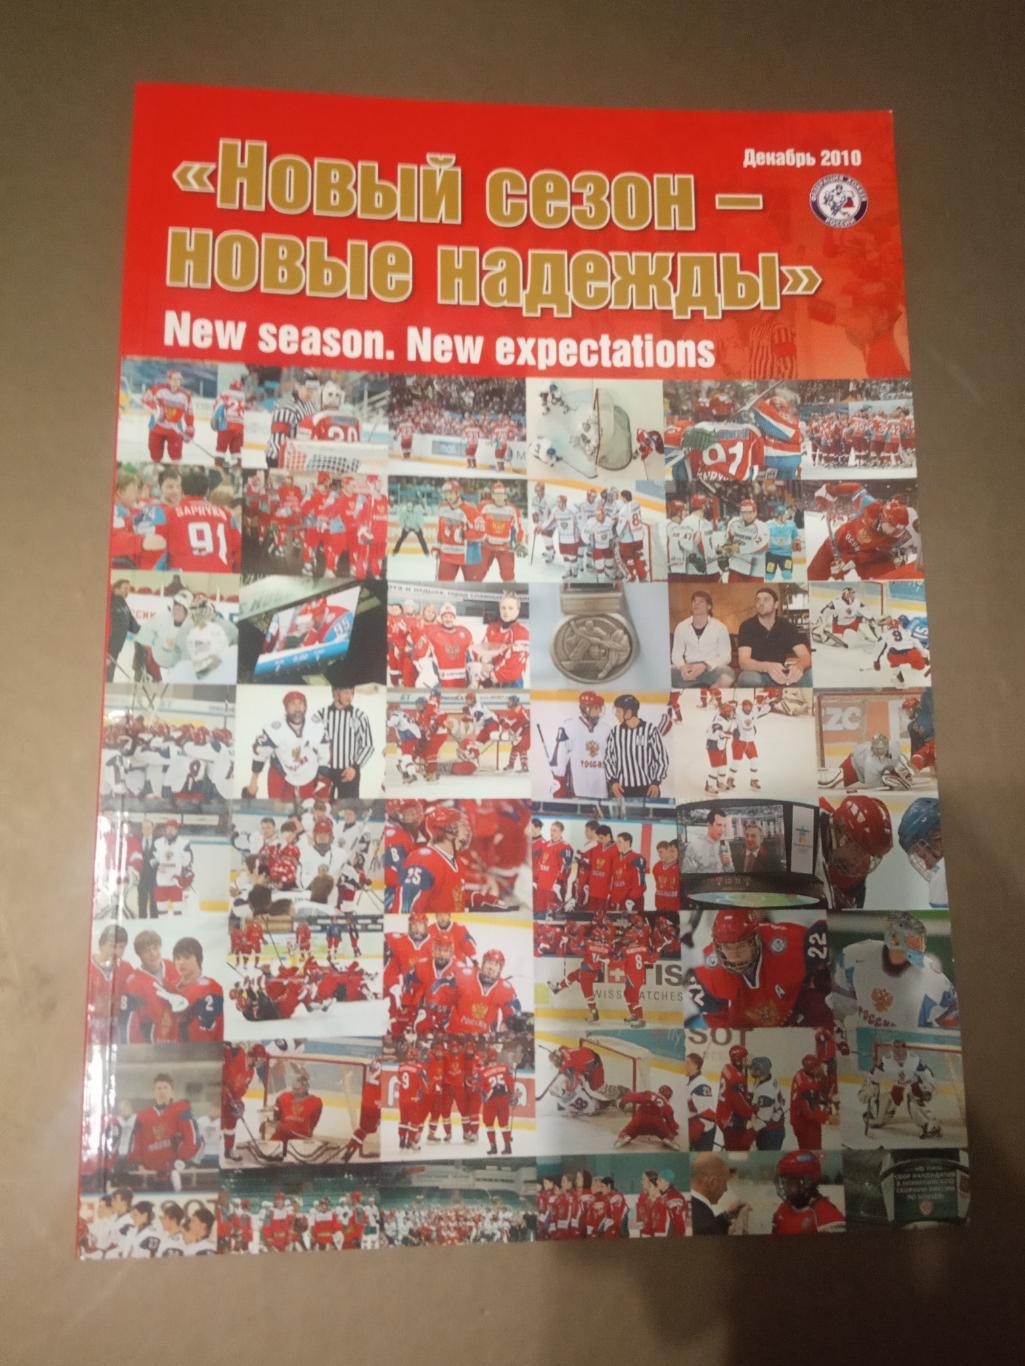 Новый сезон 2010-2011 - Новые надежды ФХР сборная Россия